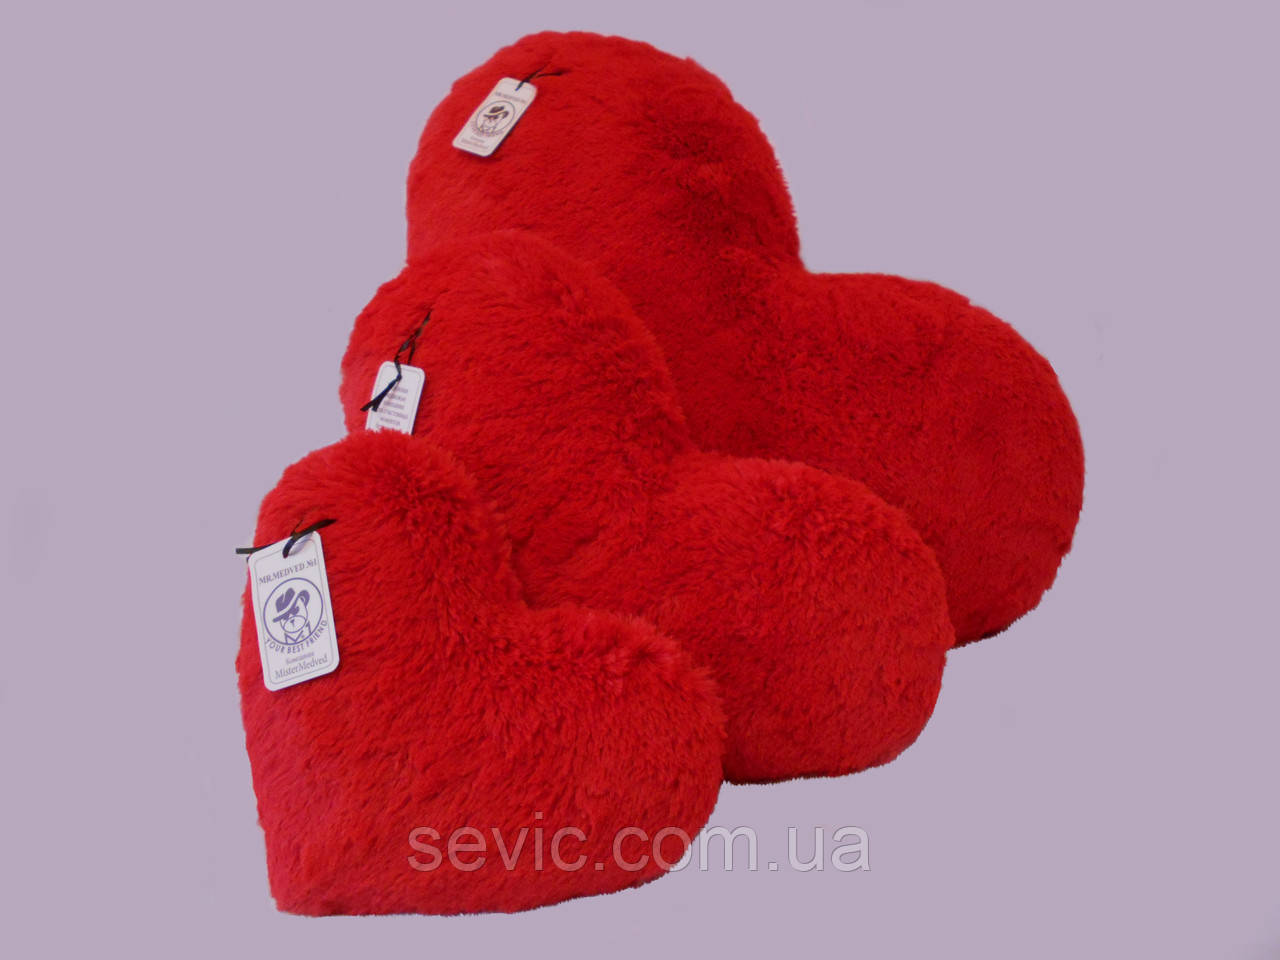 Подушка-сердце 75 см, (розовый и красный)